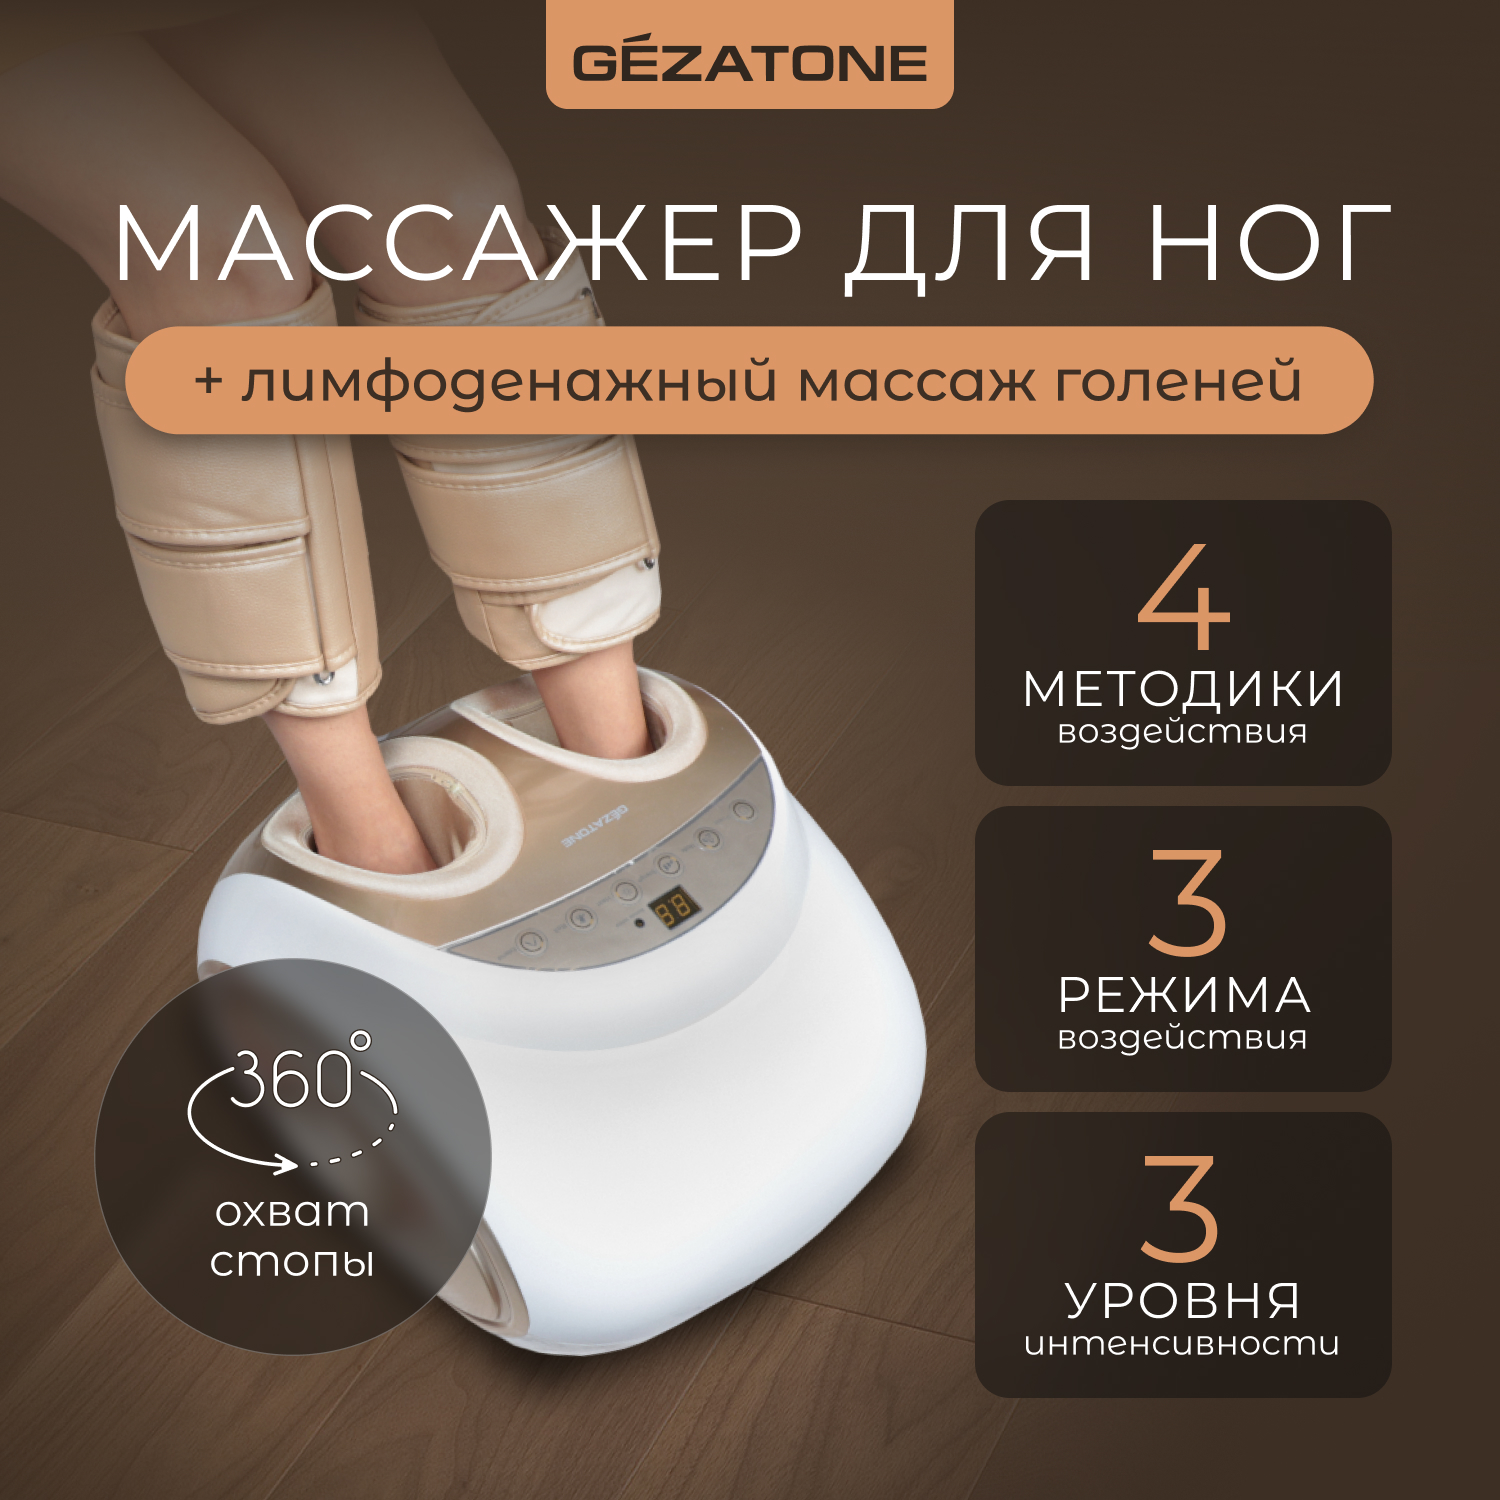 Массажер для ног с функцией прессотерапии Gezatone Sky Step 4 в 1 AMG 719 - купить в Москве, цены на Мегамаркет